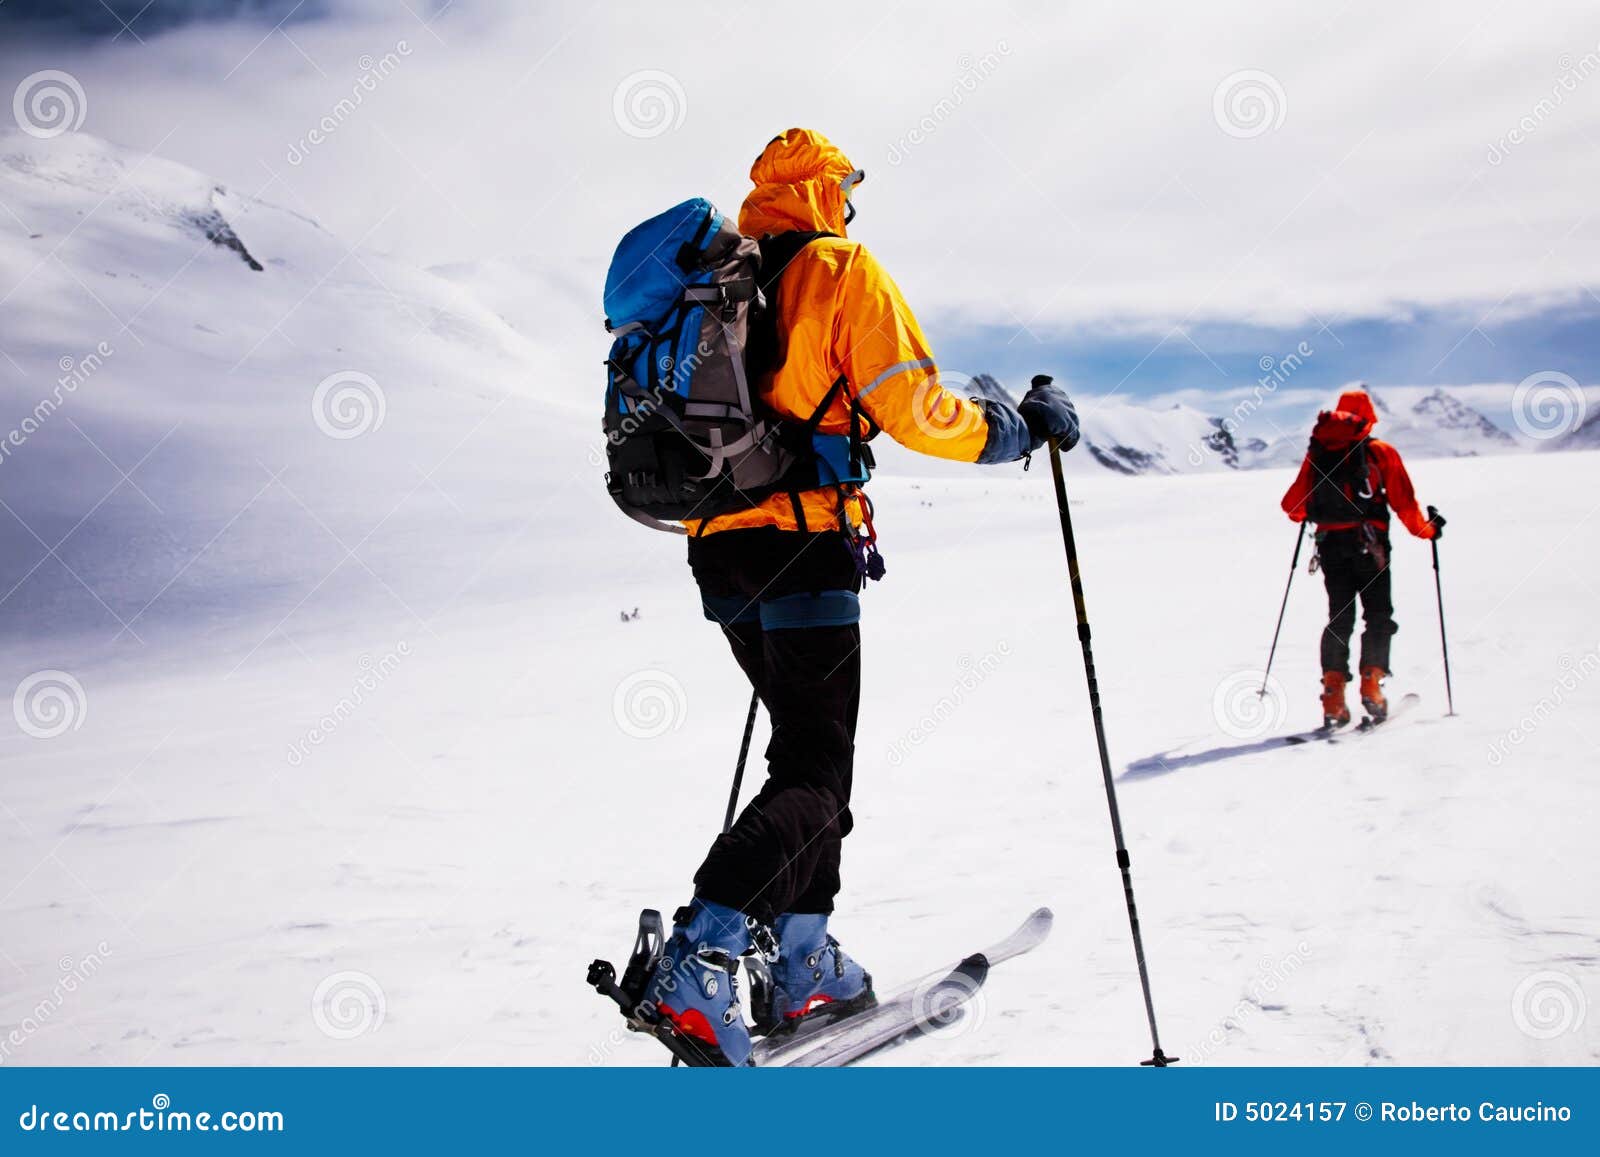 alpine touring skiers